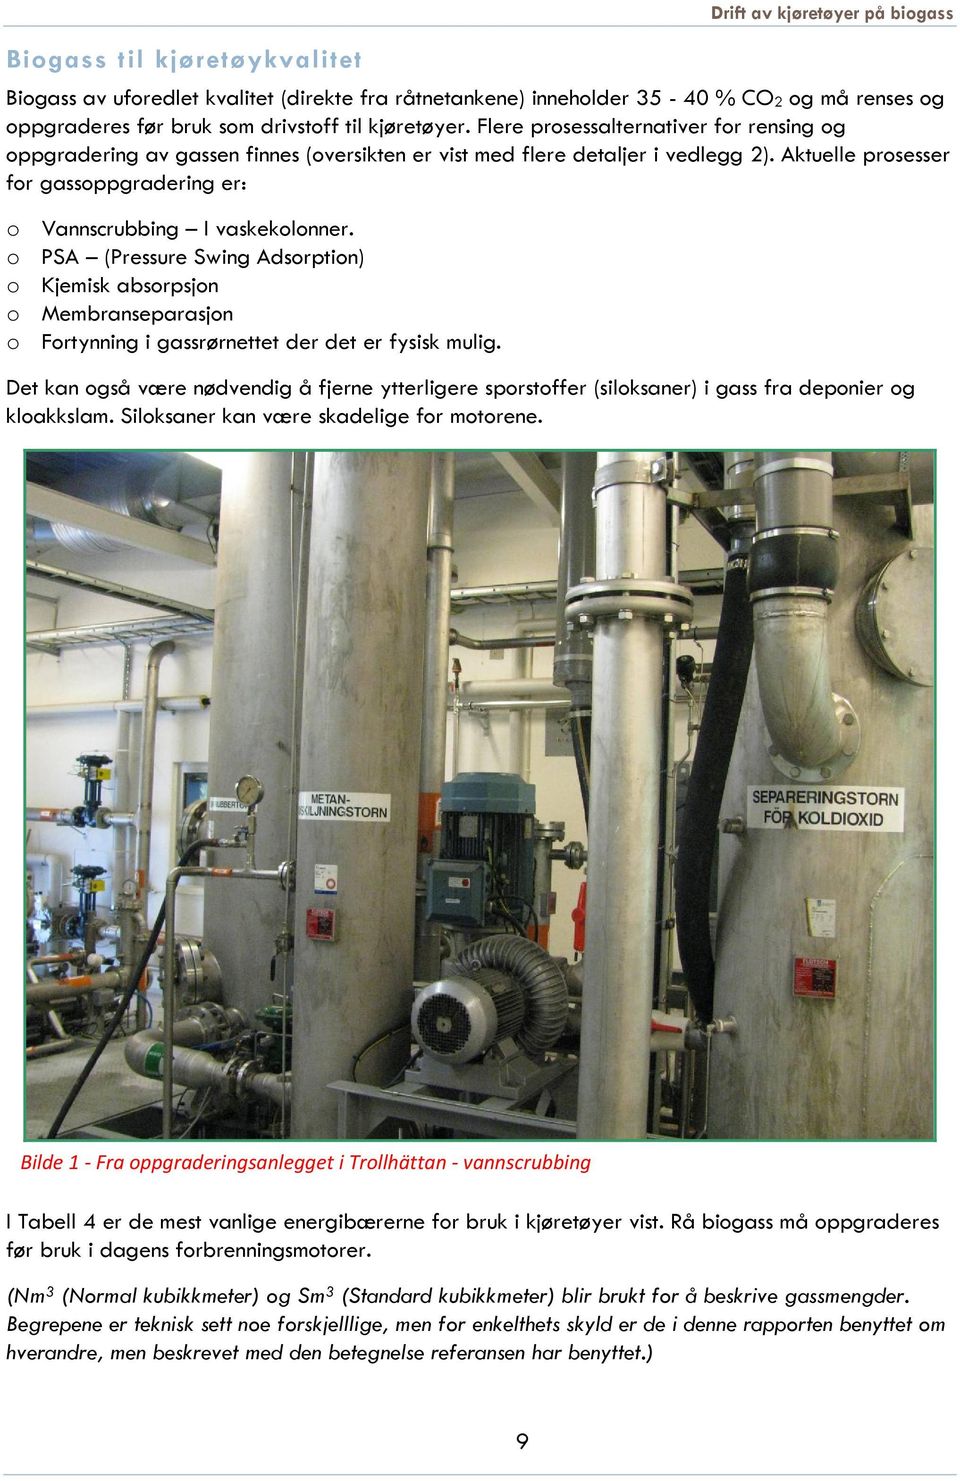 Aktuelle prosesser for gassoppgradering er: o Vannscrubbing I vaskekolonner.